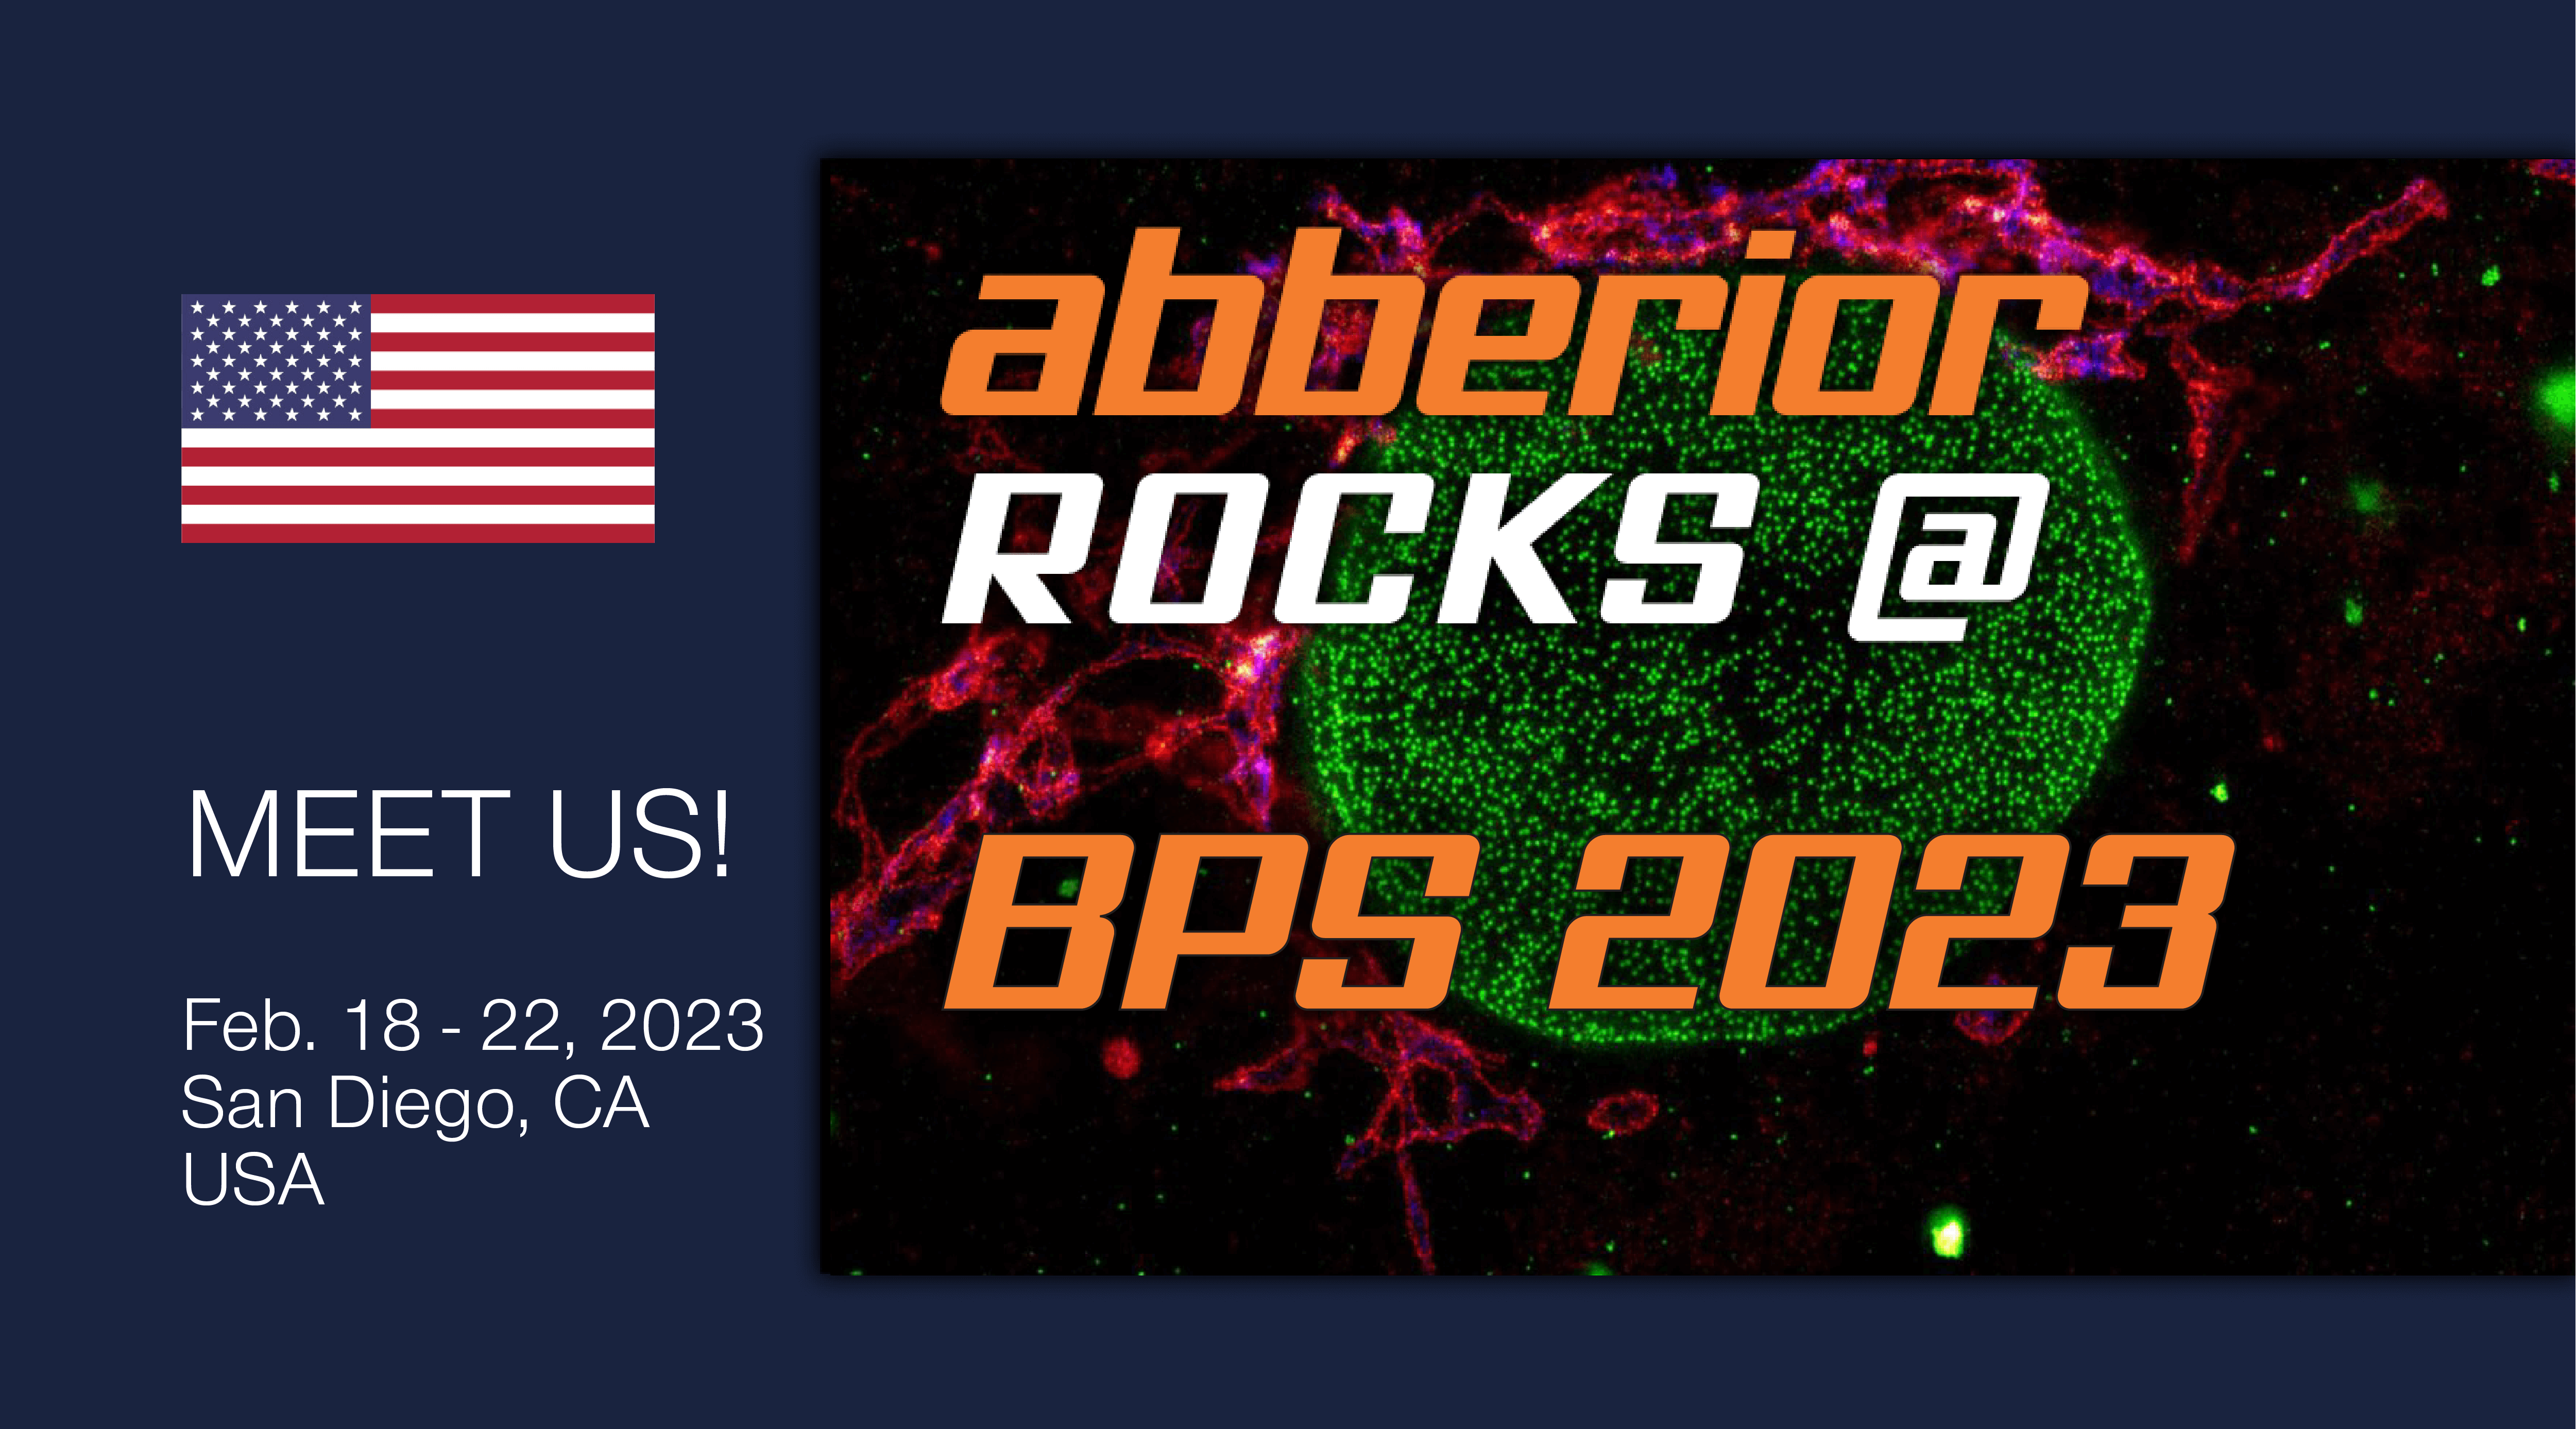 abberior rocks @ BPS 2023